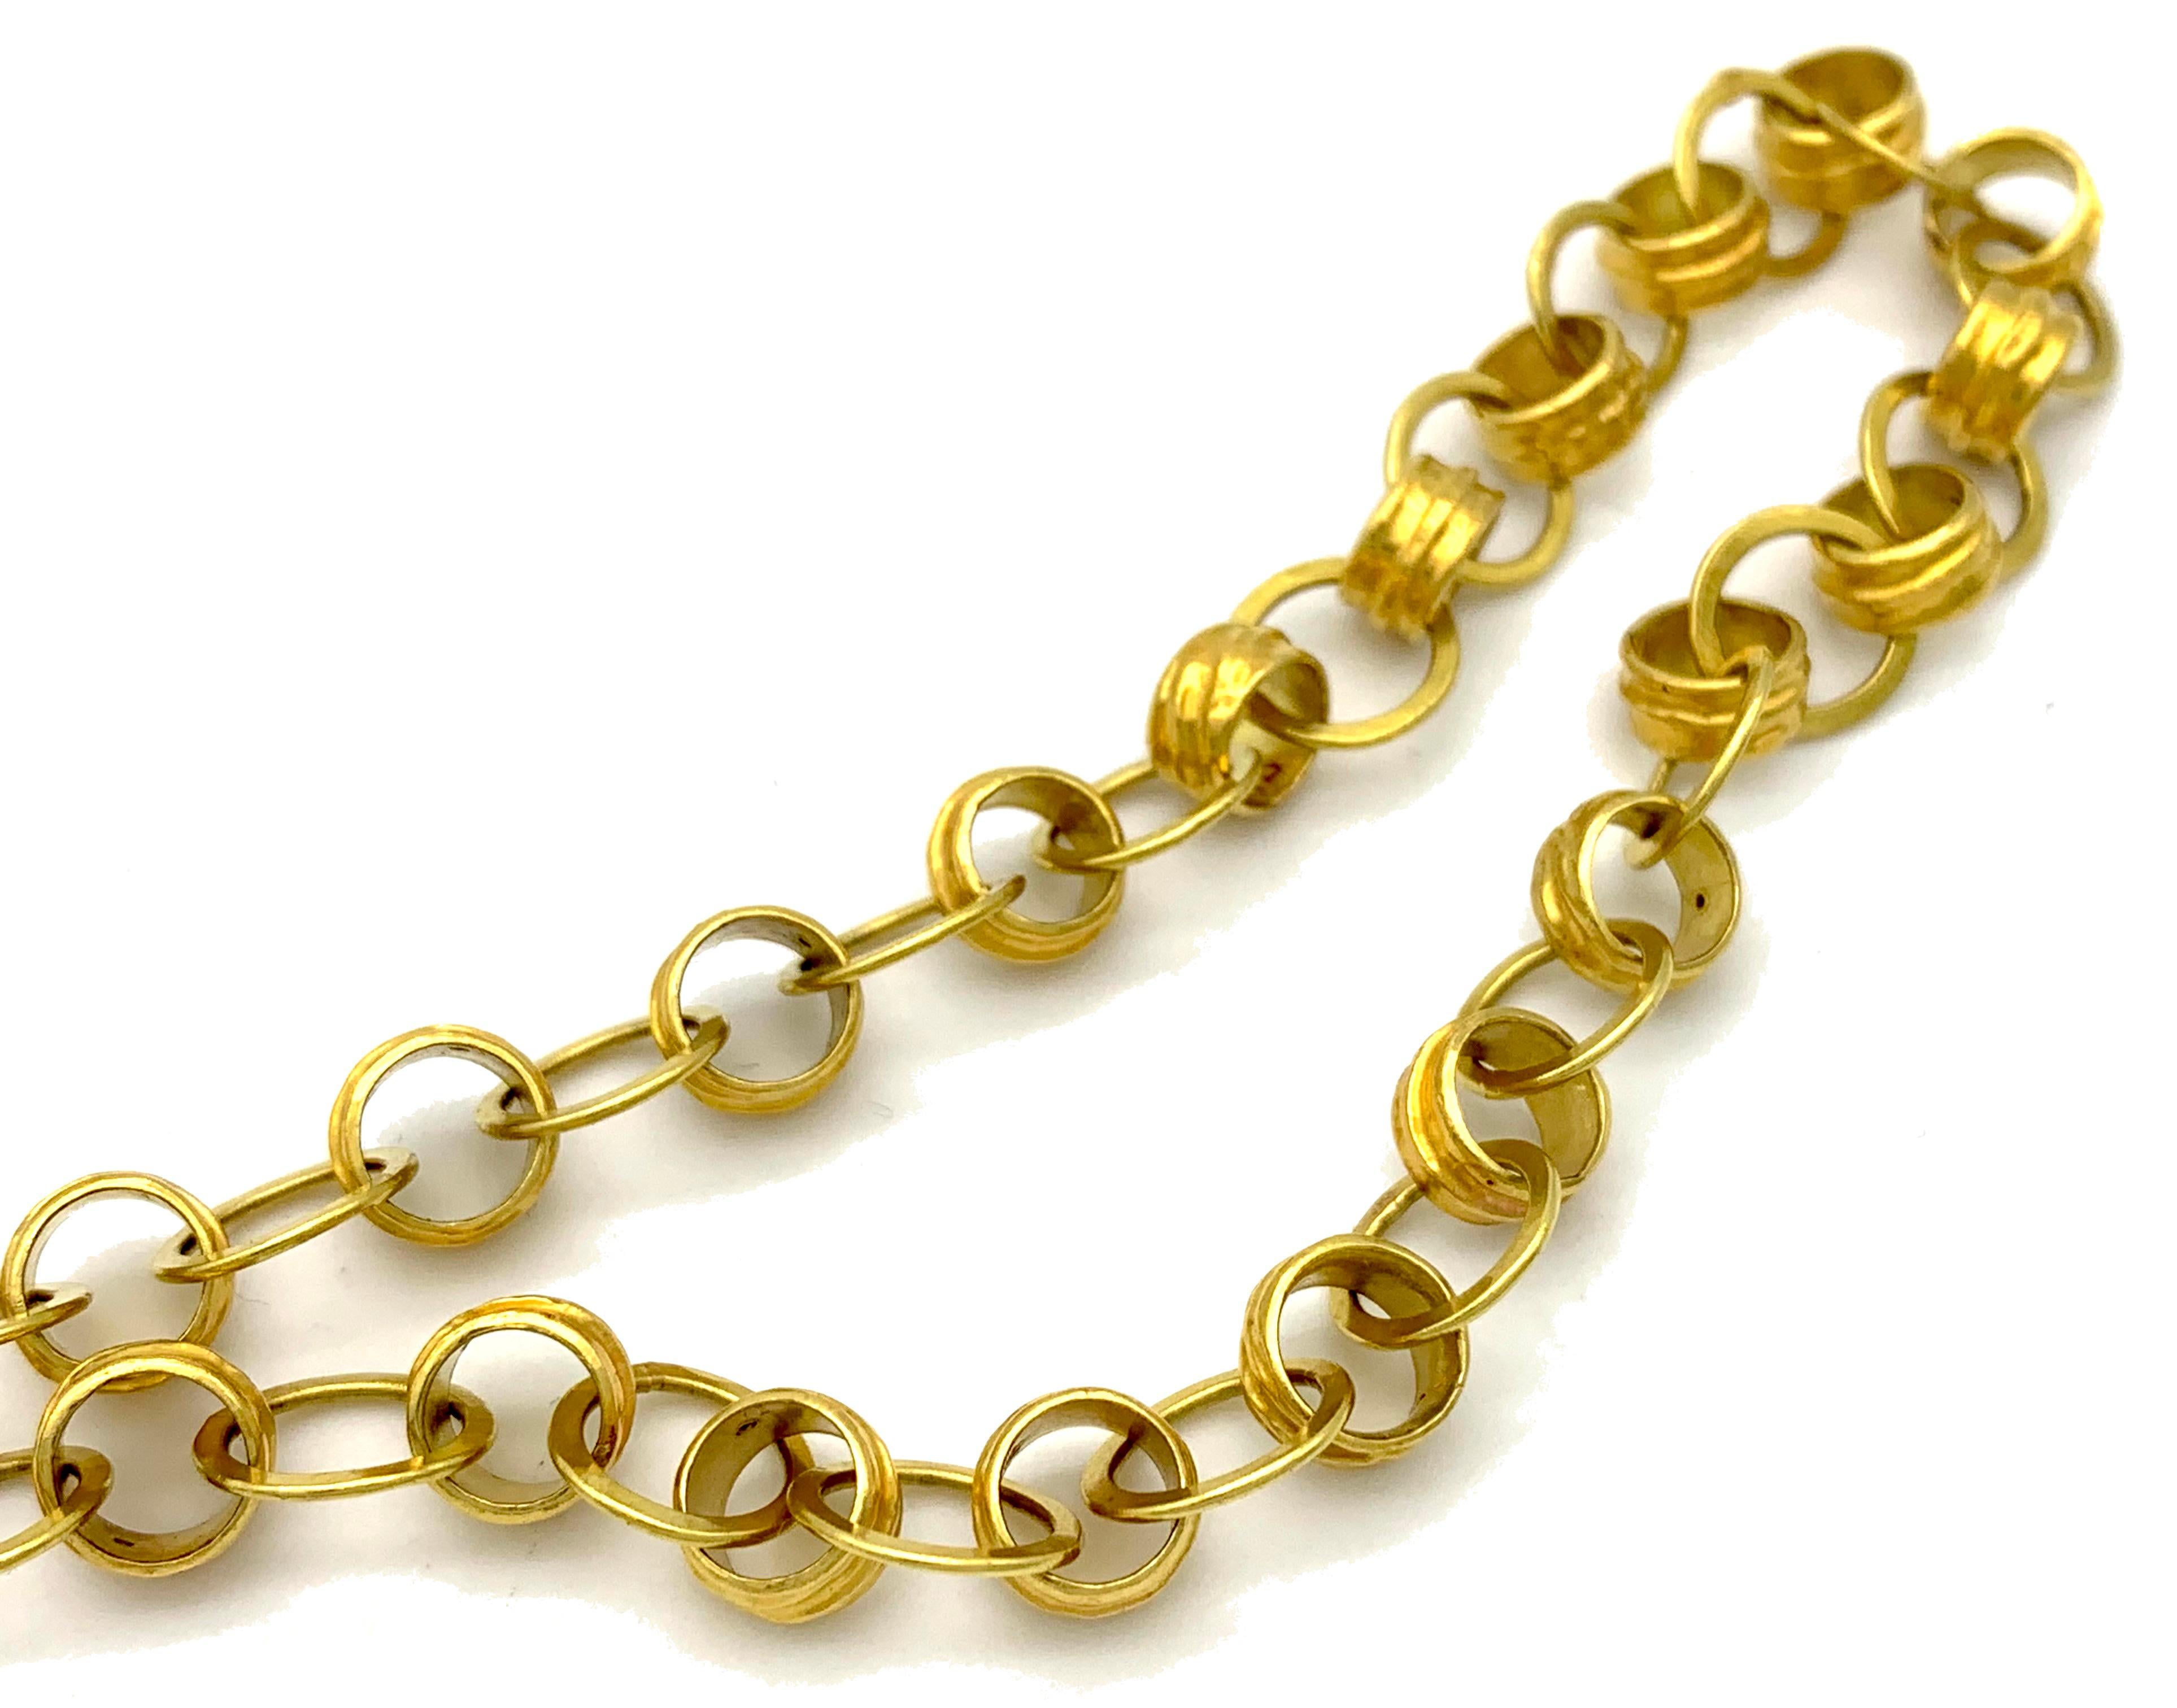 18 karat gold chains